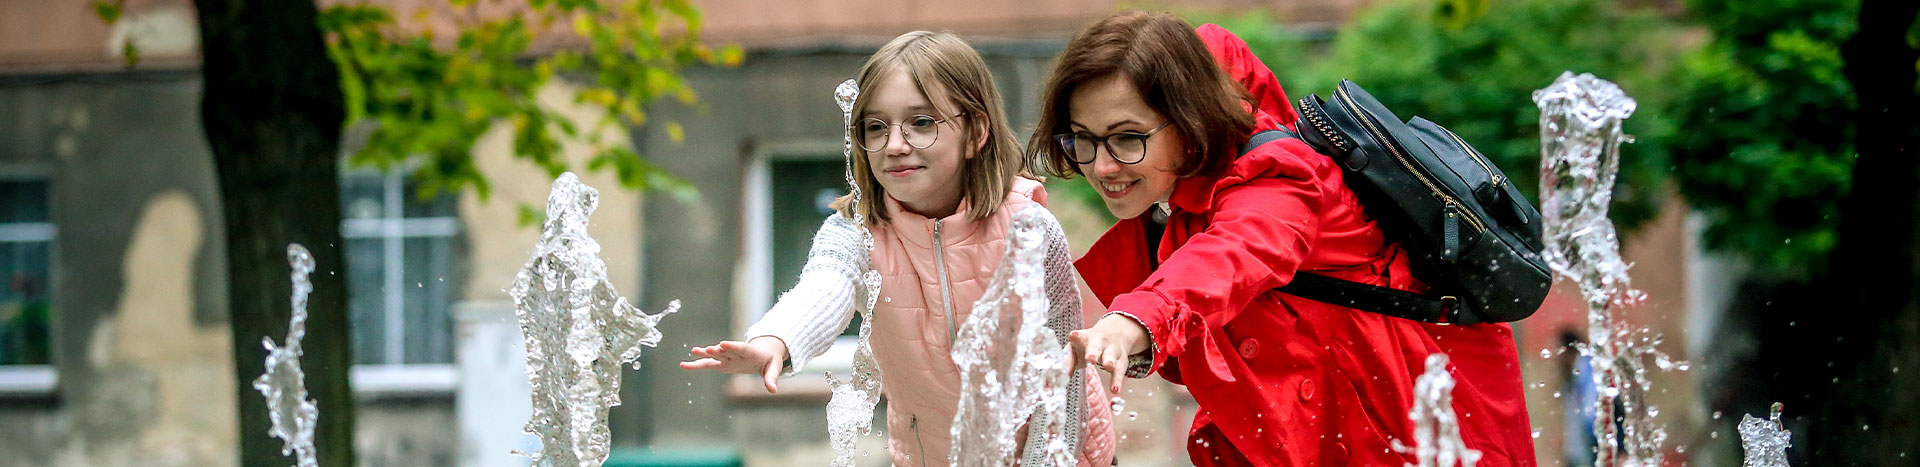 Fotografia przedstawia kobietę w czerwonym płaszczu oraz jej około dziesięcioletnią córkę. Obie w okularach, wyciągają ręce do wody tryskającej z fontanny. Autorką zdjęcia jest Lucyna Nenow.